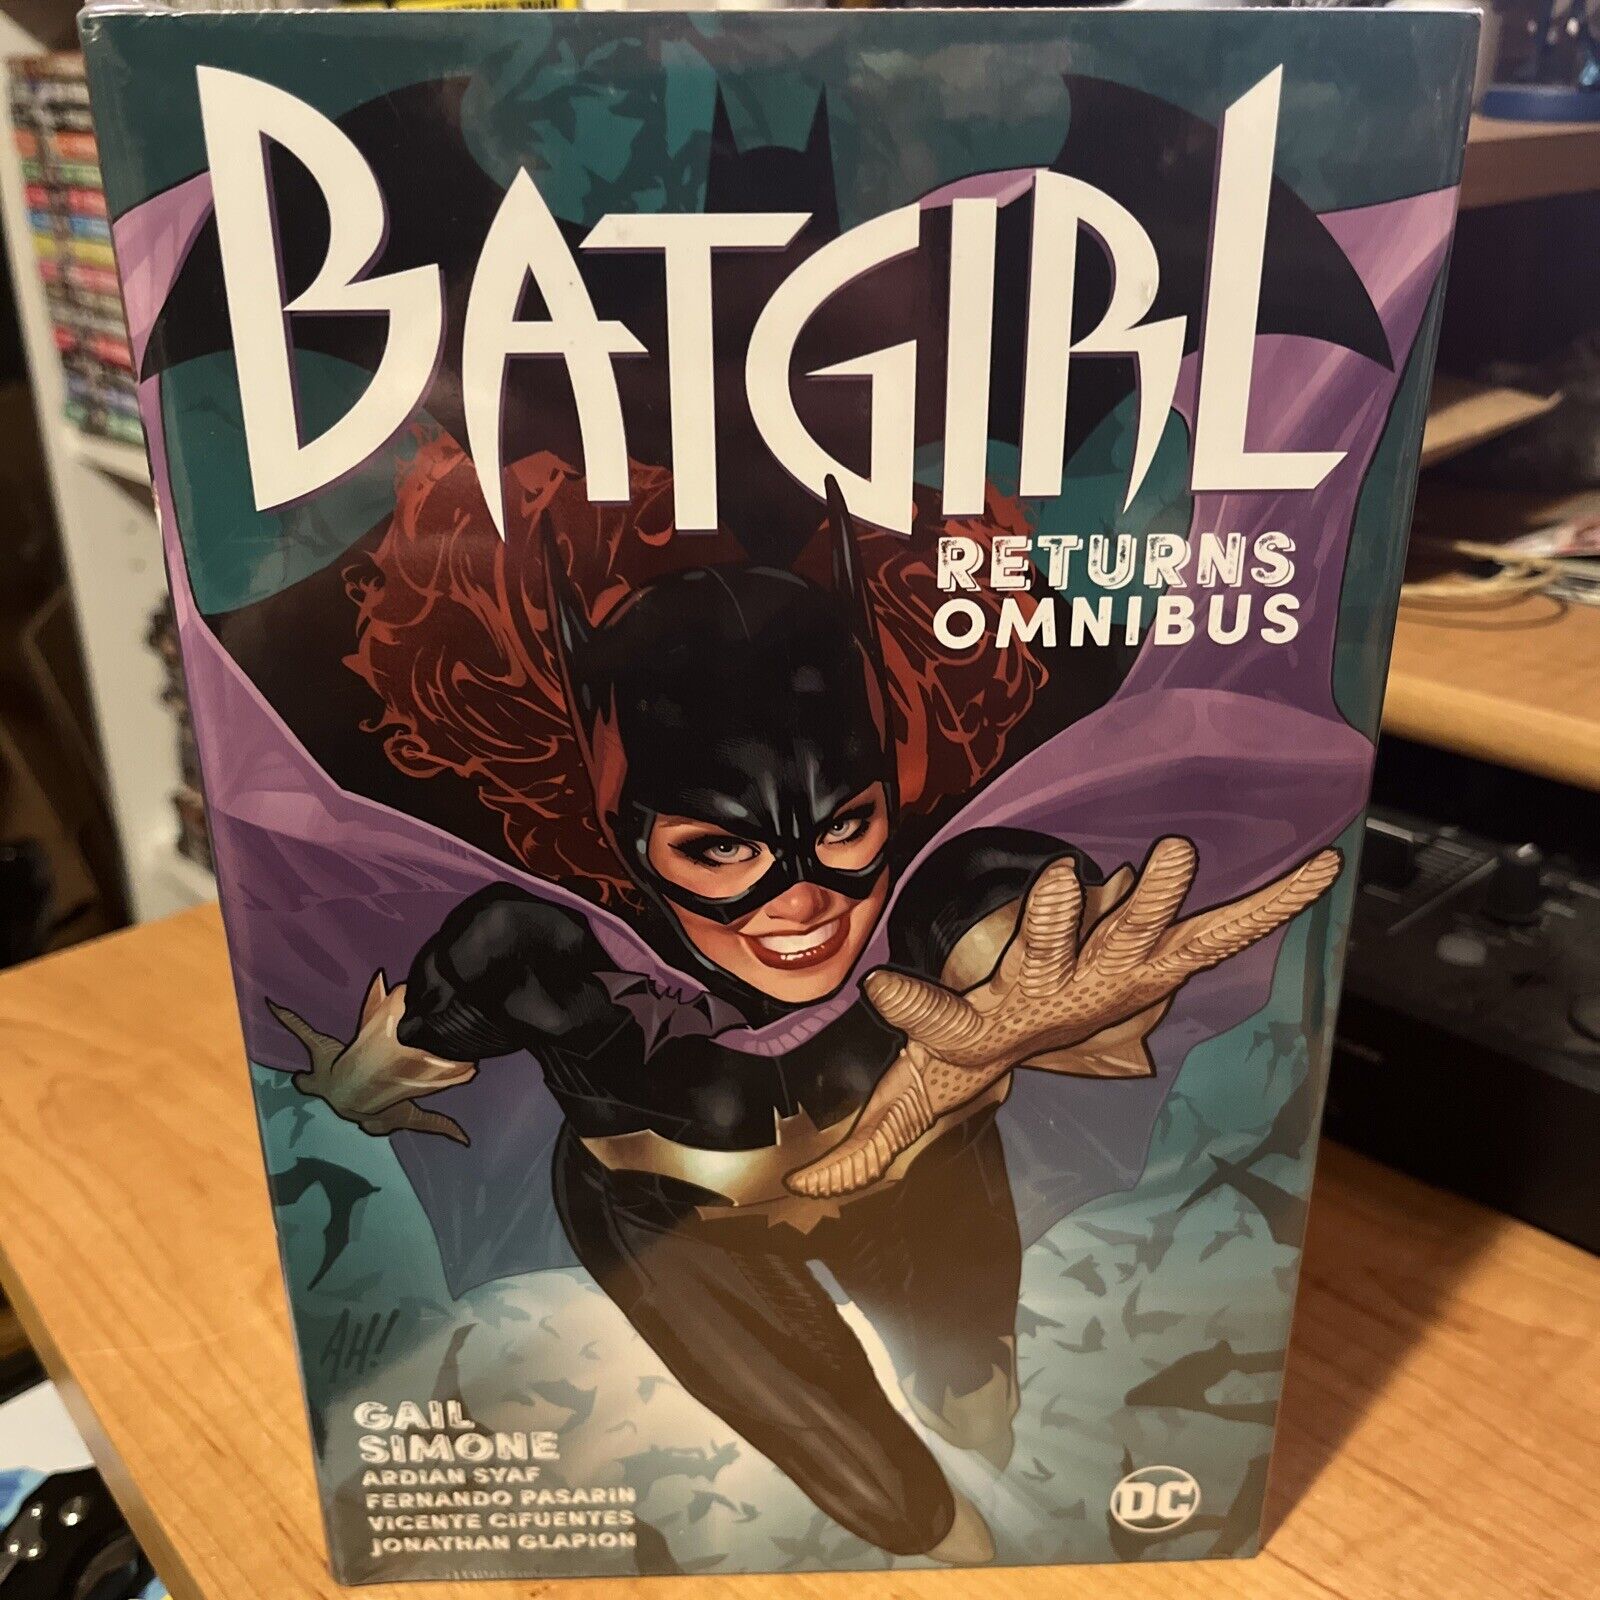 Batgirl Returns Omnibus [Hardcover] Simone, Gail and Various